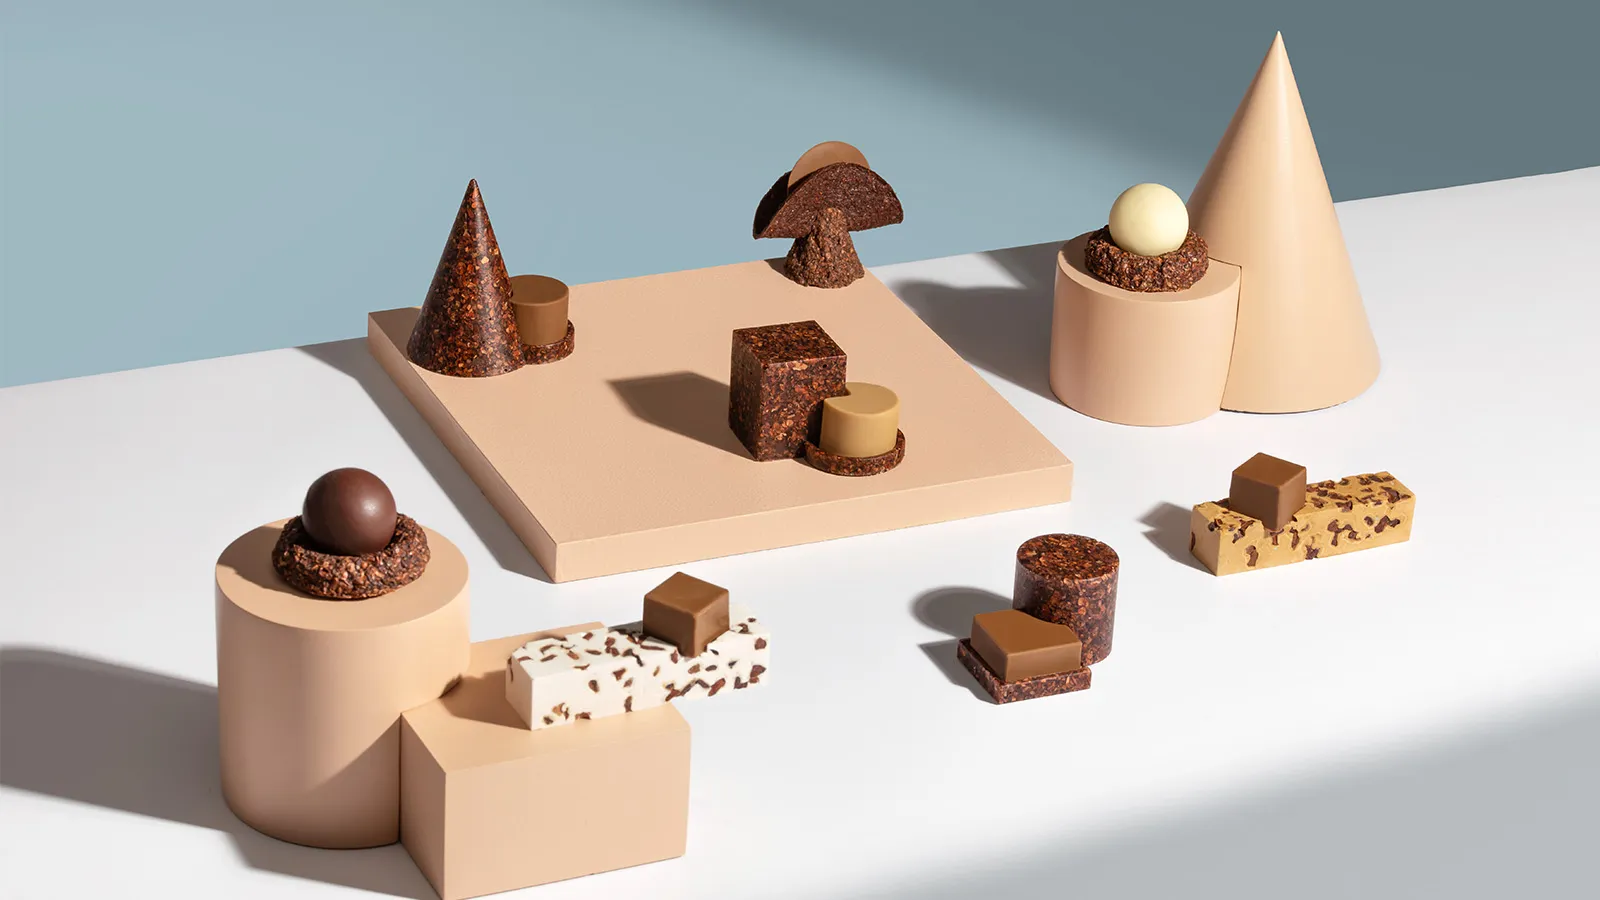 Omnom 的巧克力雕塑將設計、口味和可持續性從豆子到咬一口融為一體